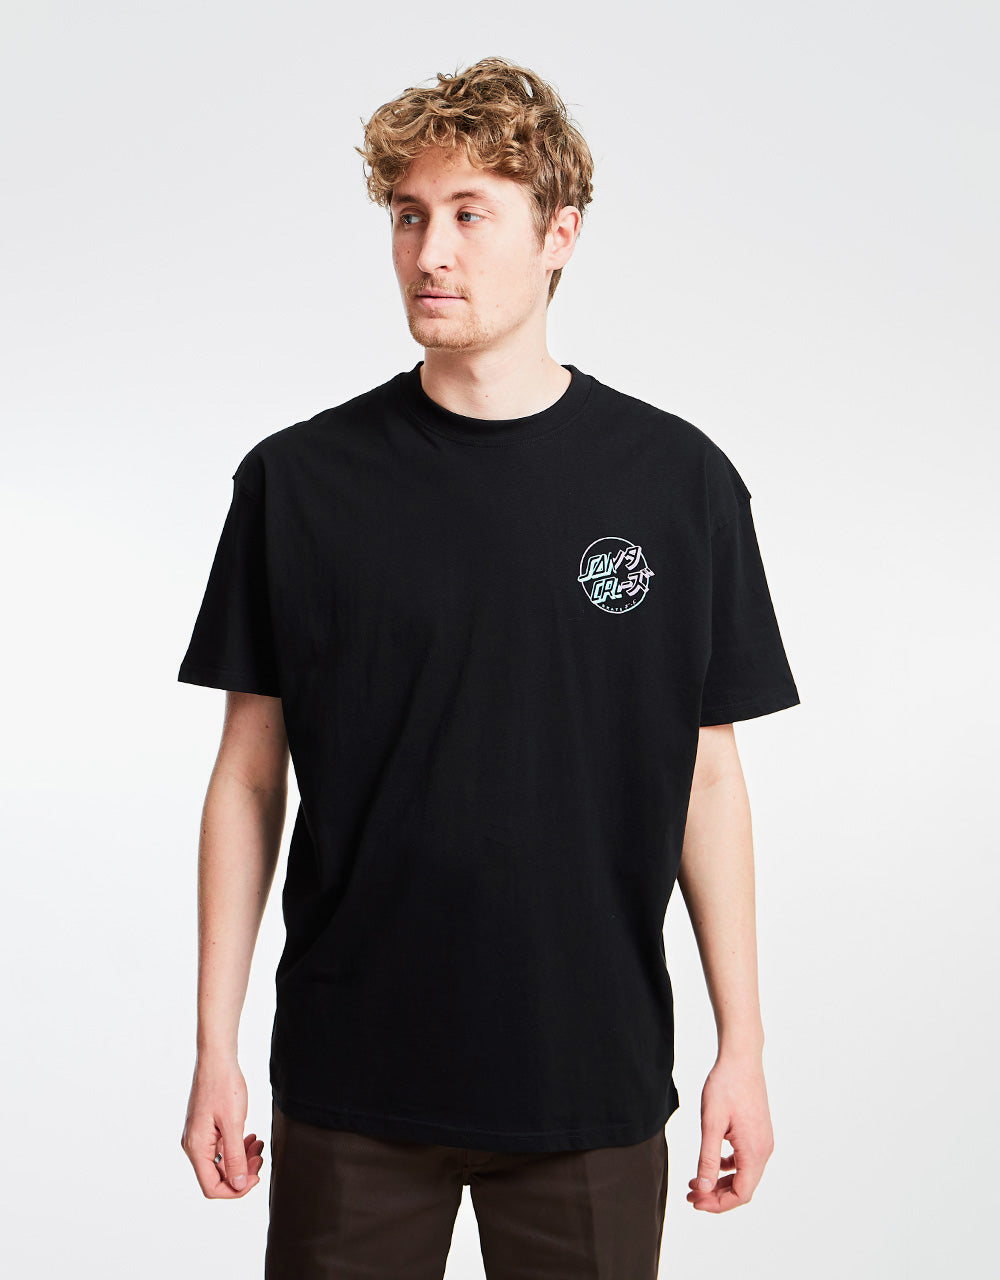 Santa Cruz Divide Dot T-Shirt - Black